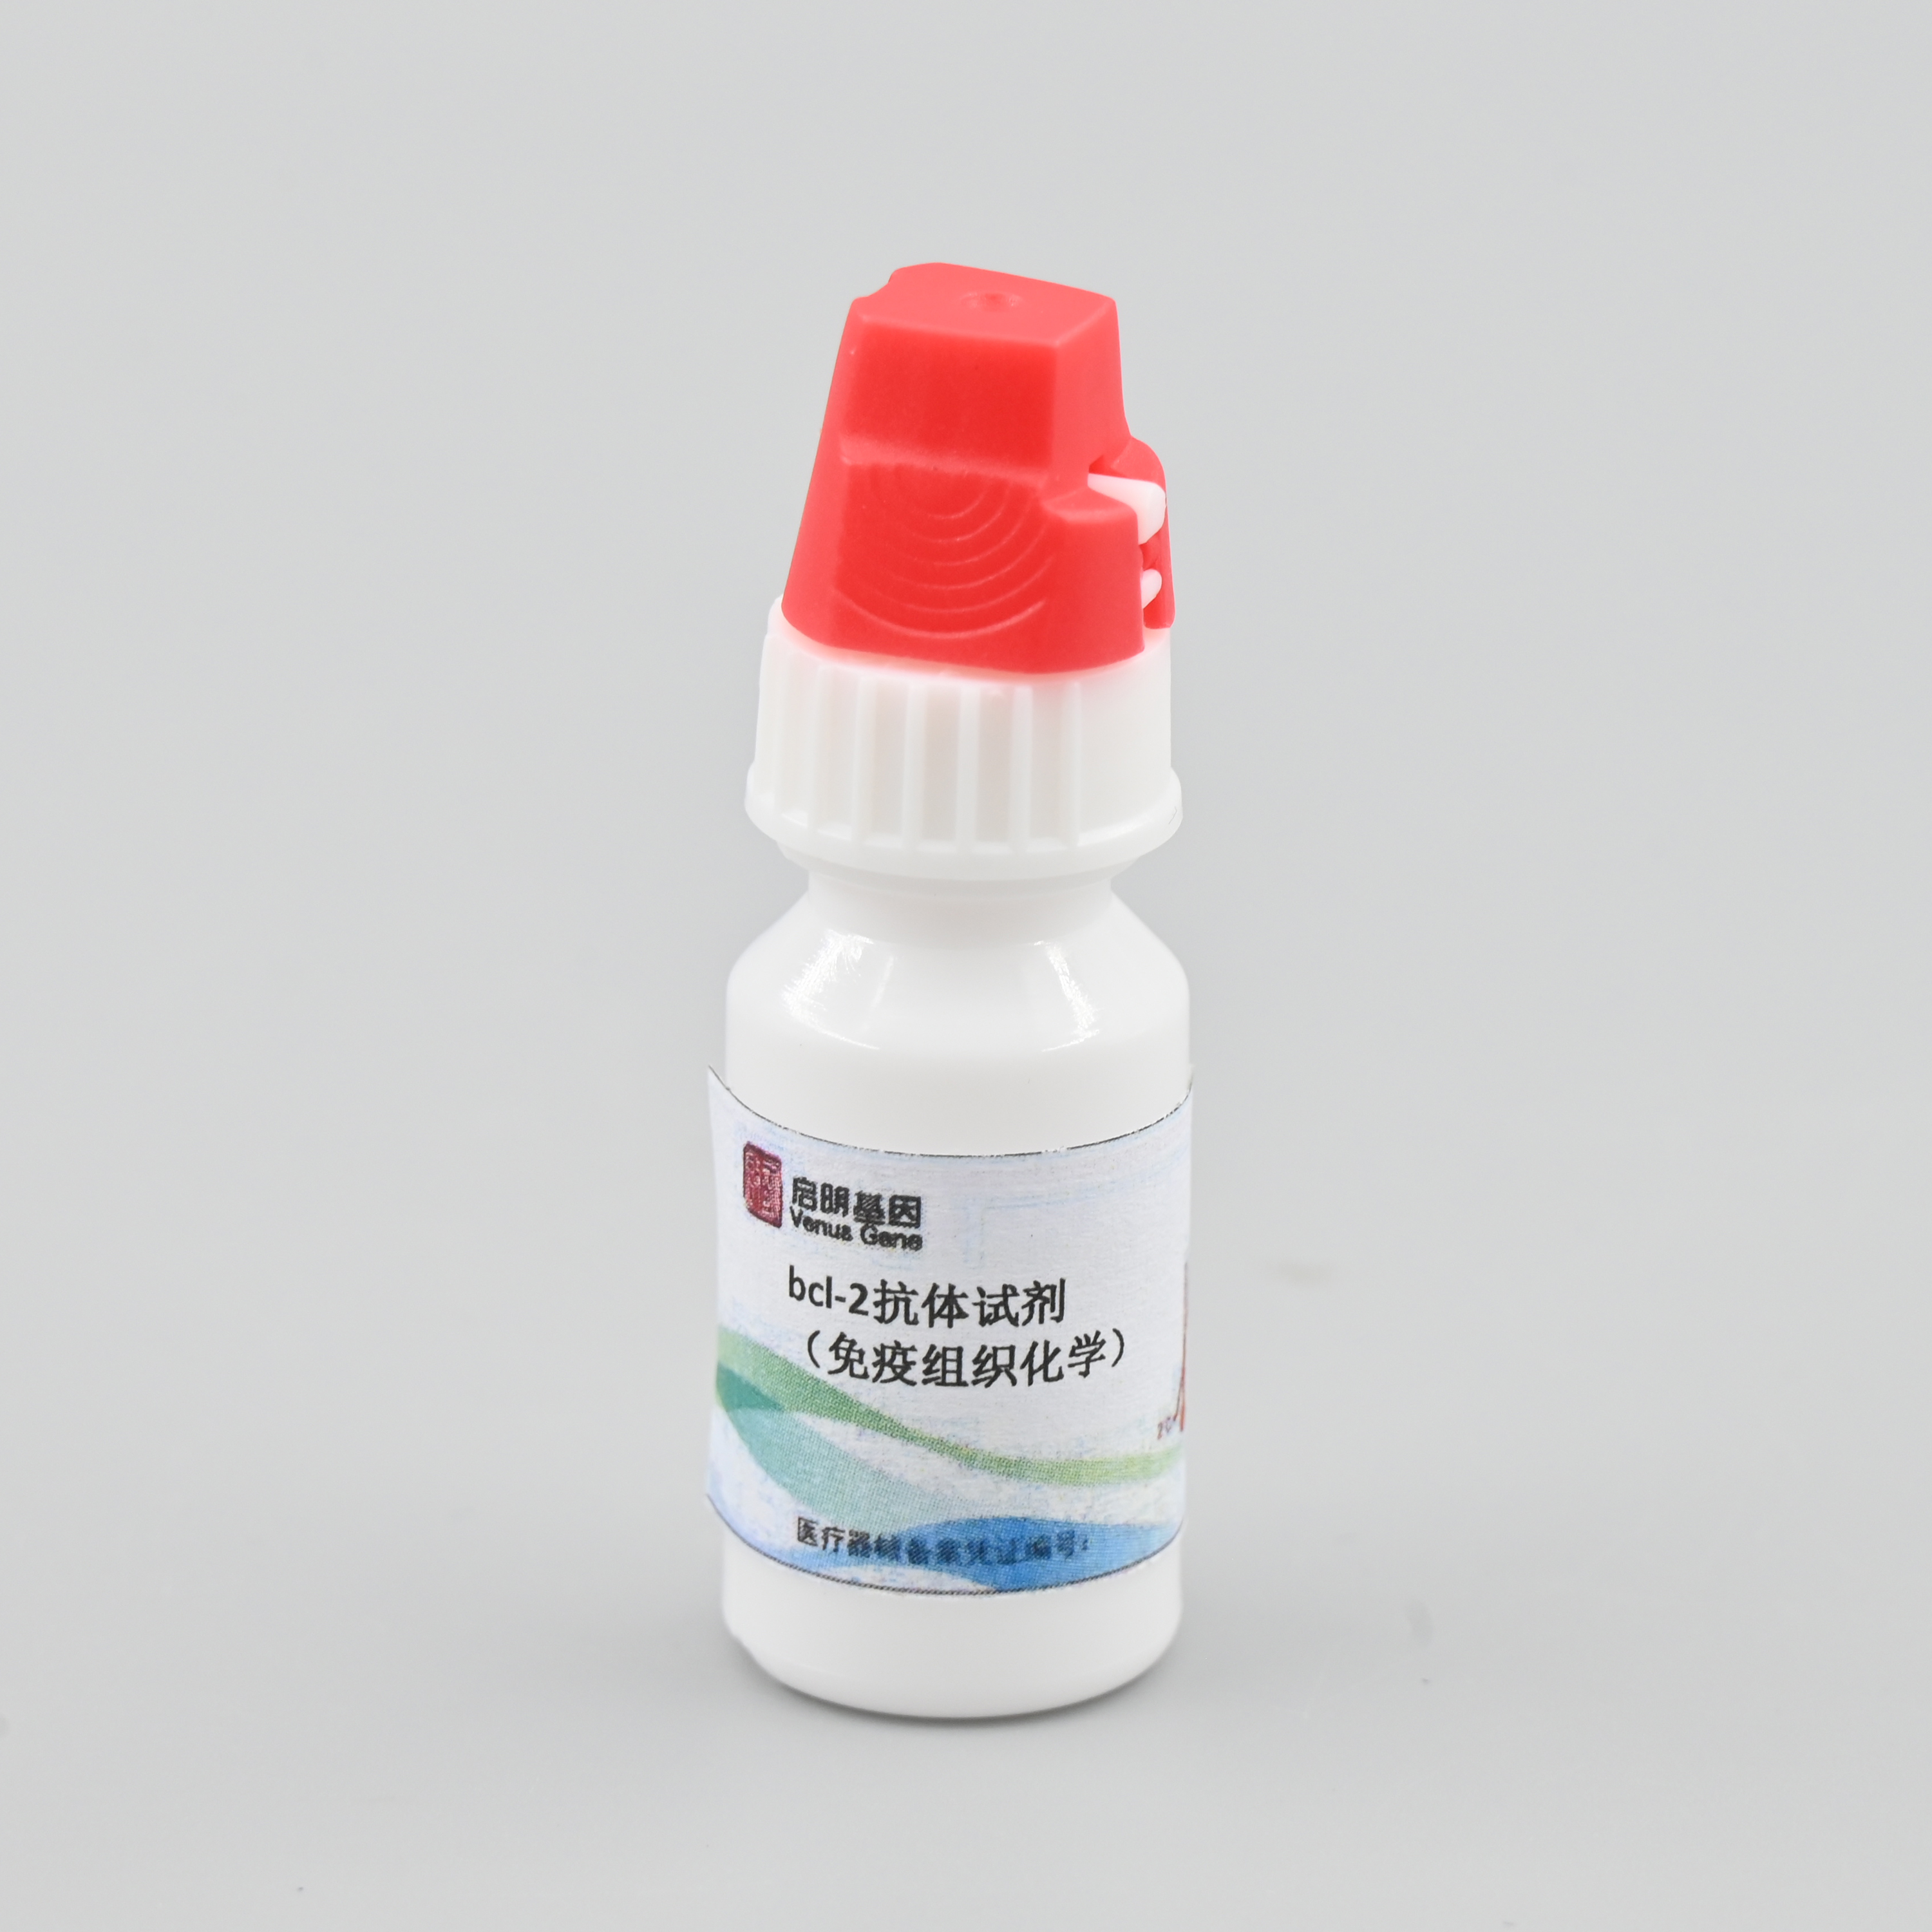 【启明基因】bcl-2抗体试剂/检测试剂盒（免疫组织化学）